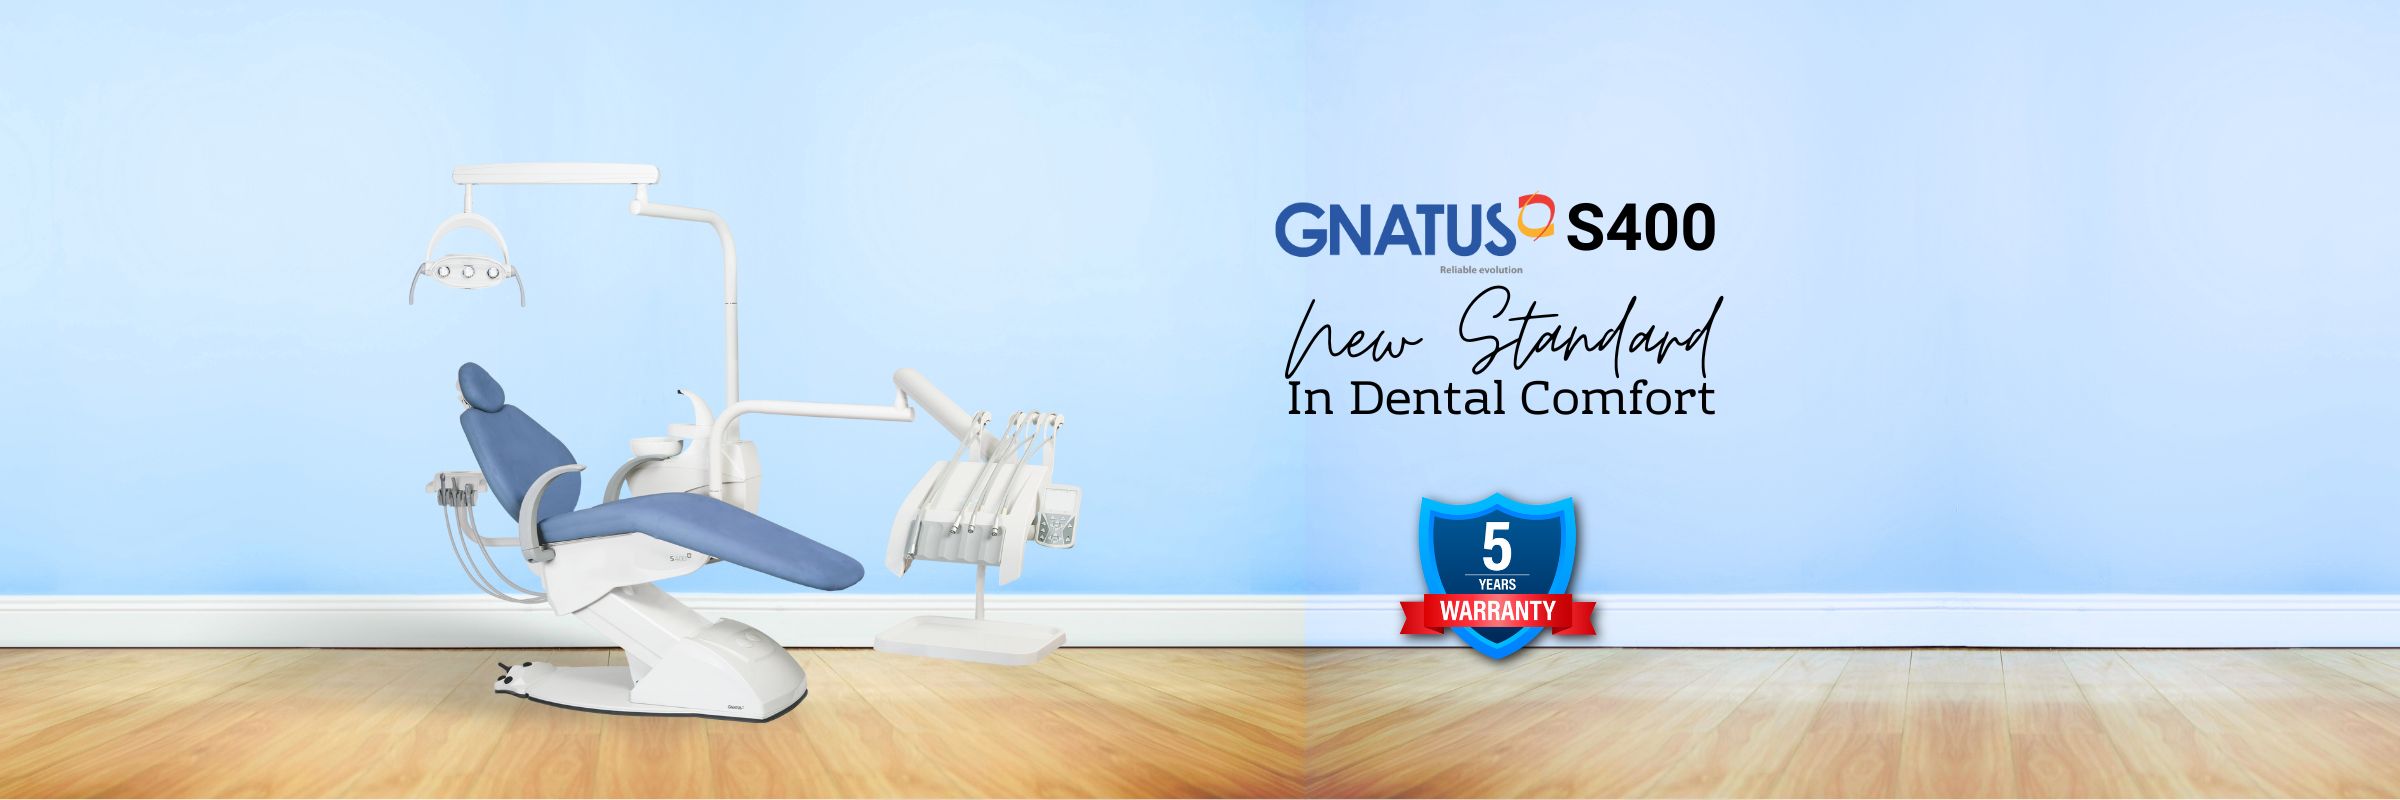 Gnatus S400 Dental Chair